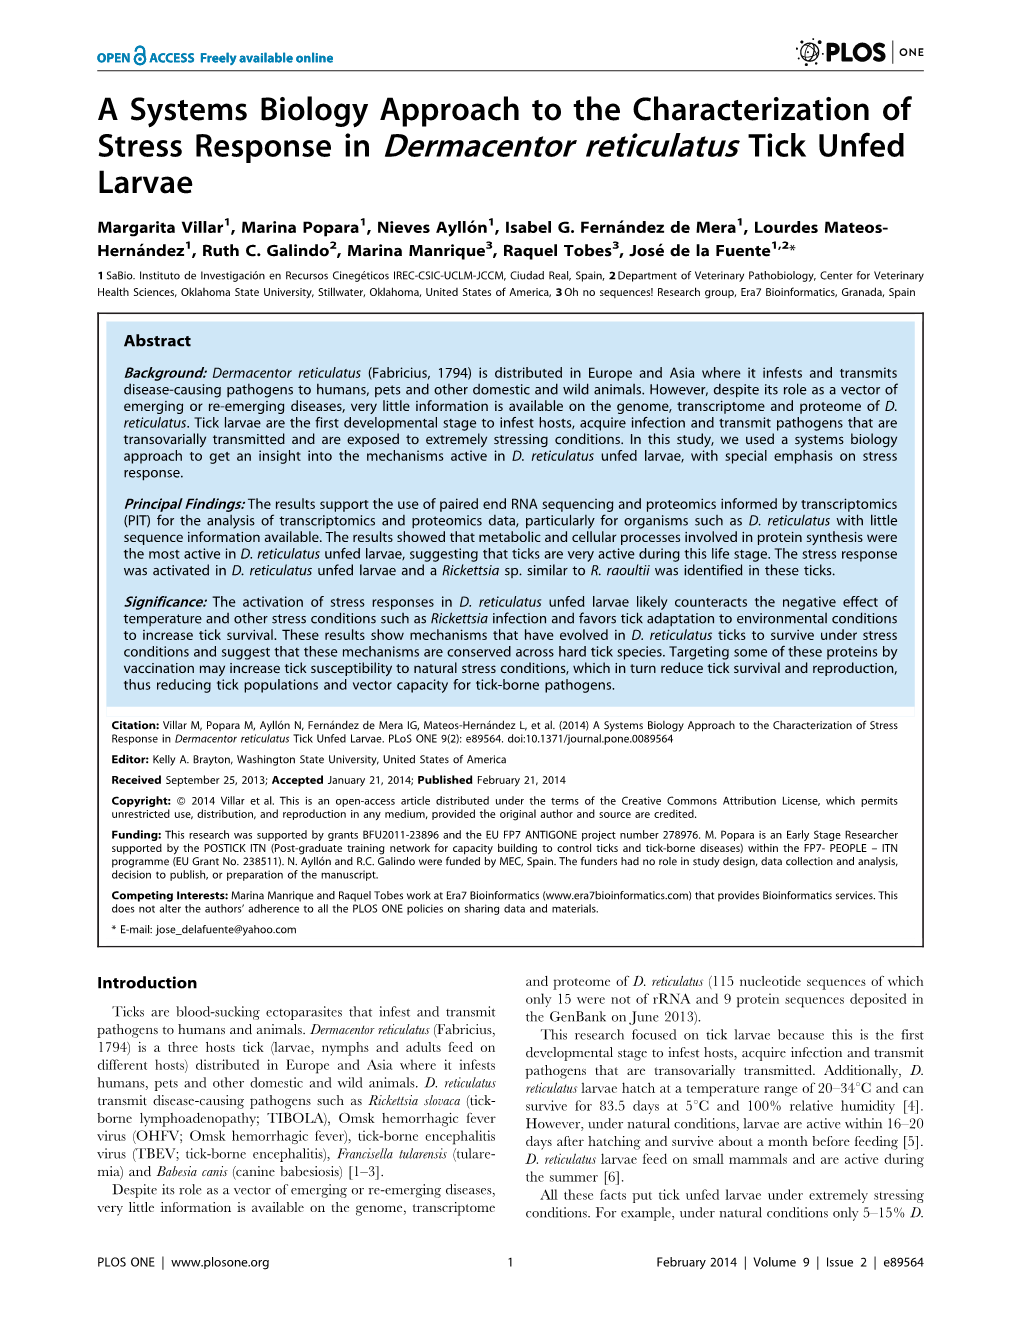 Stress Response in Dermacentor Reticulatus Tick Unfed Larvae